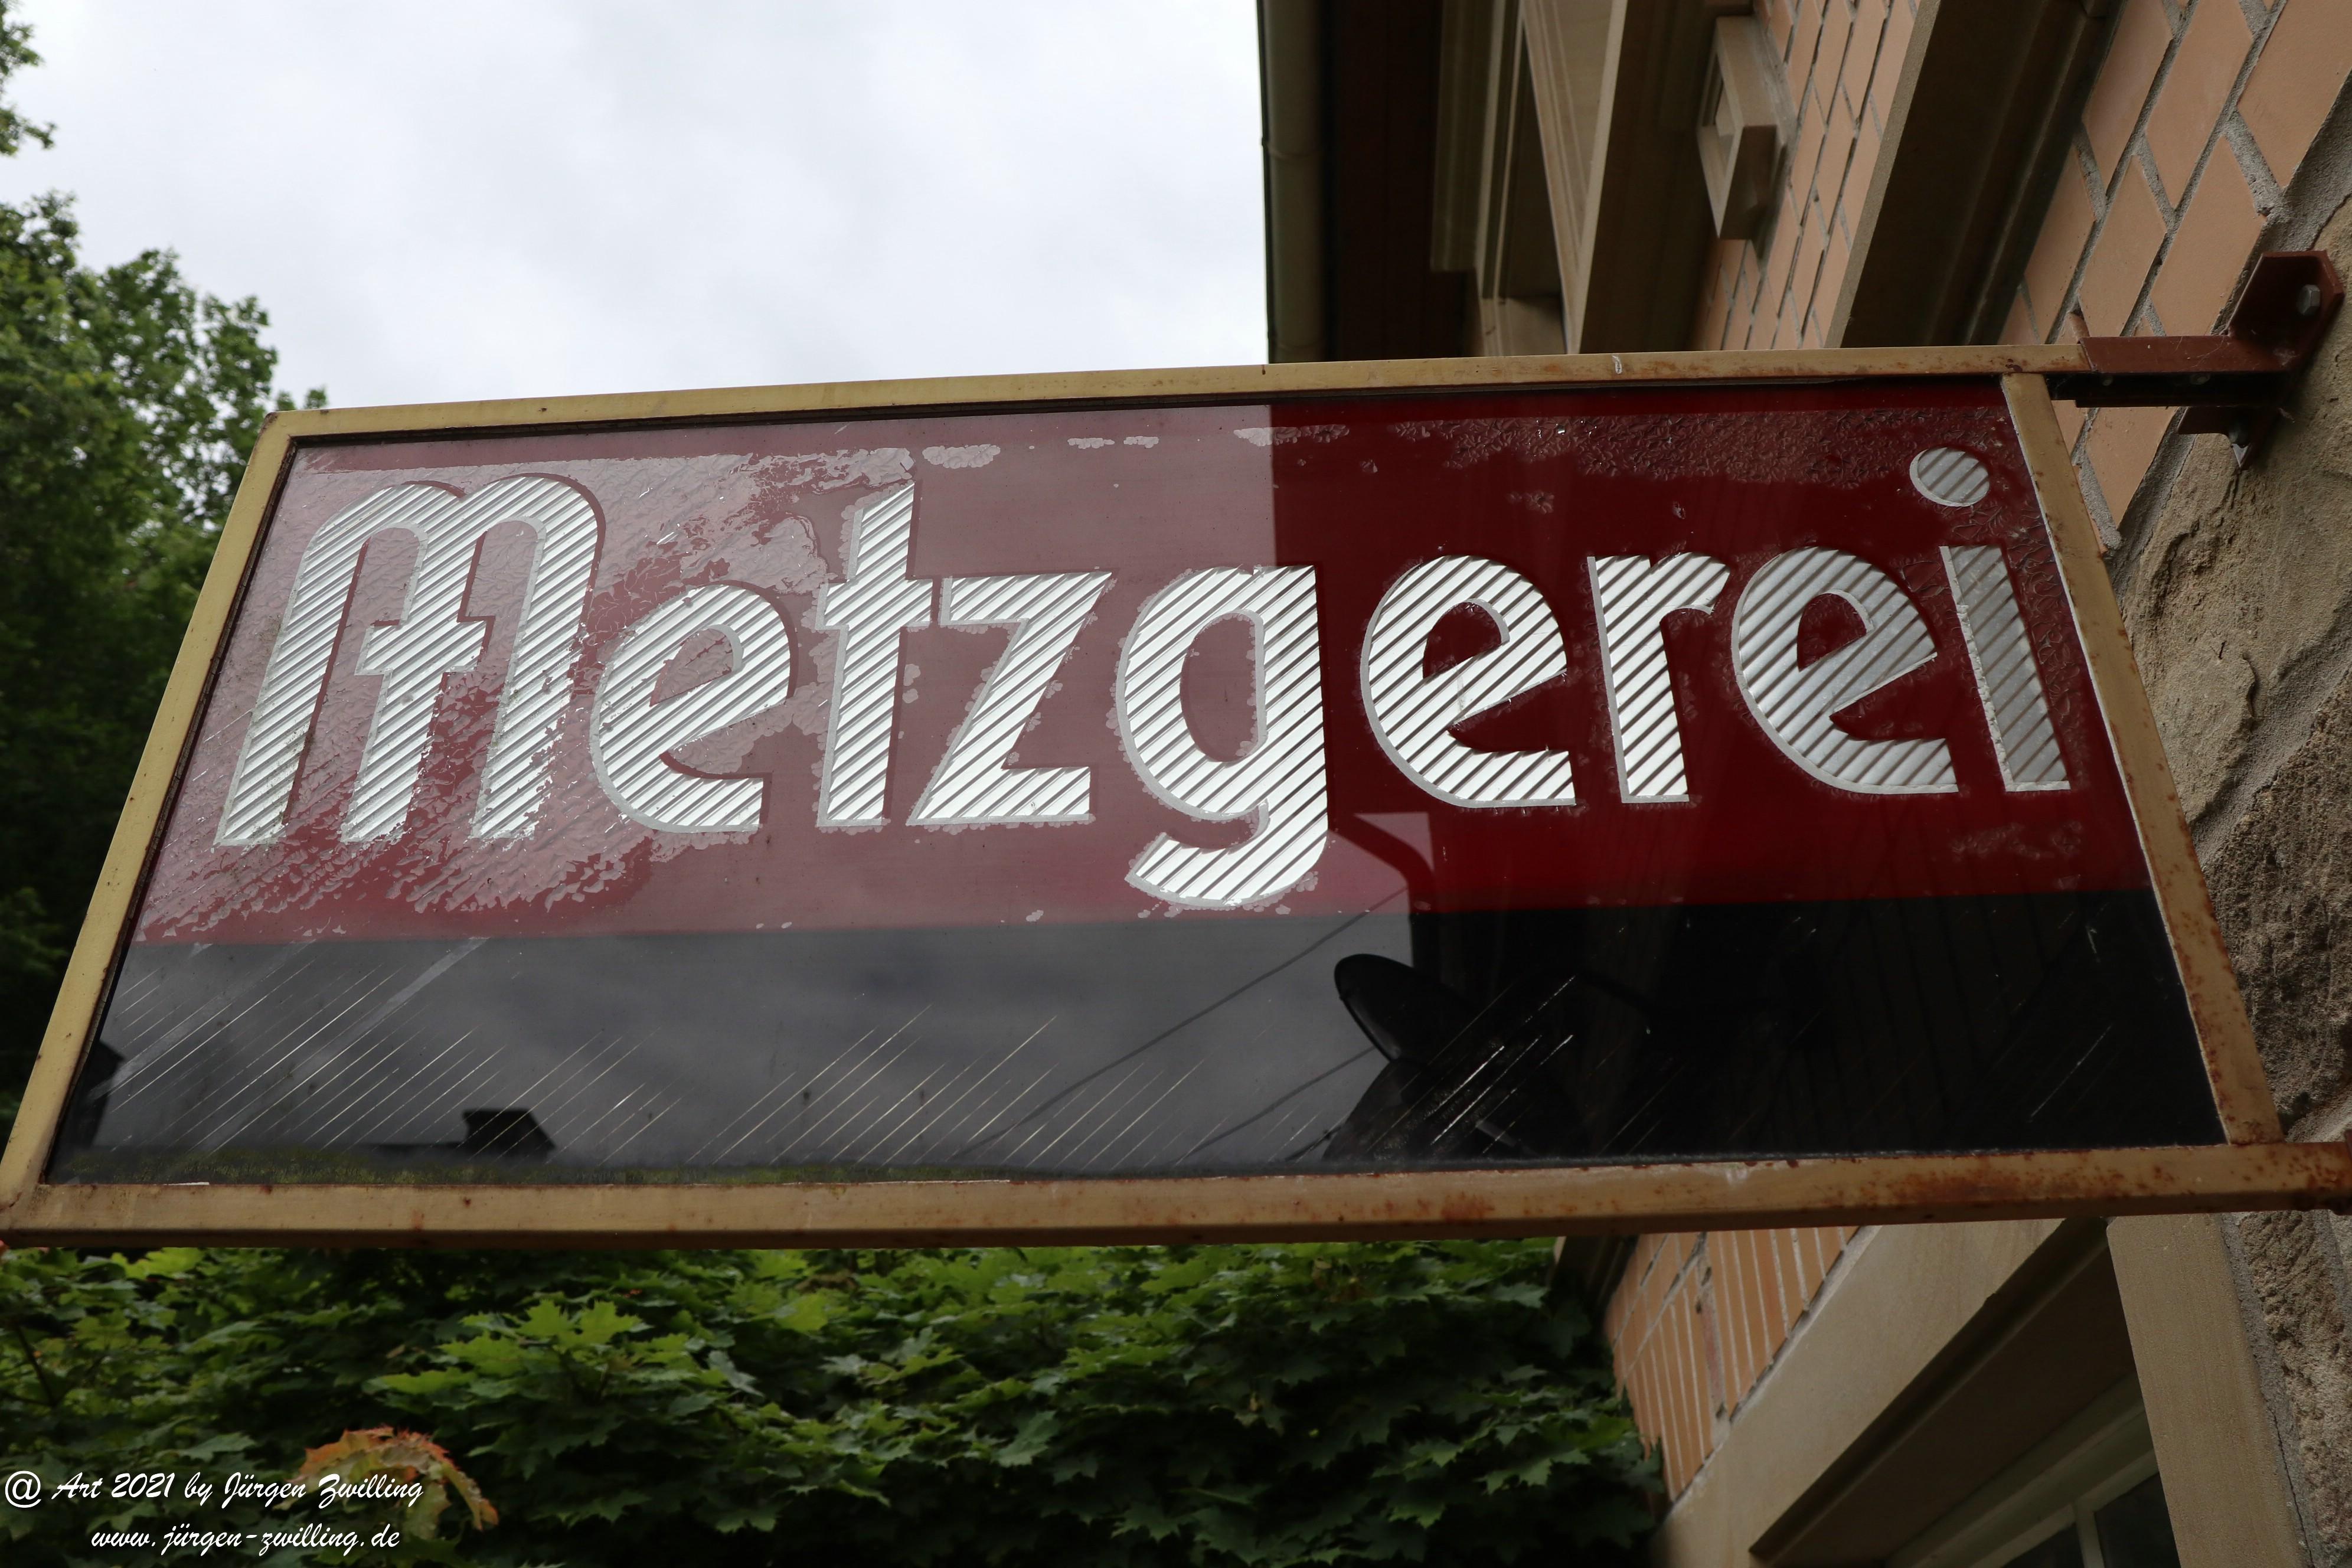 Metzgerei